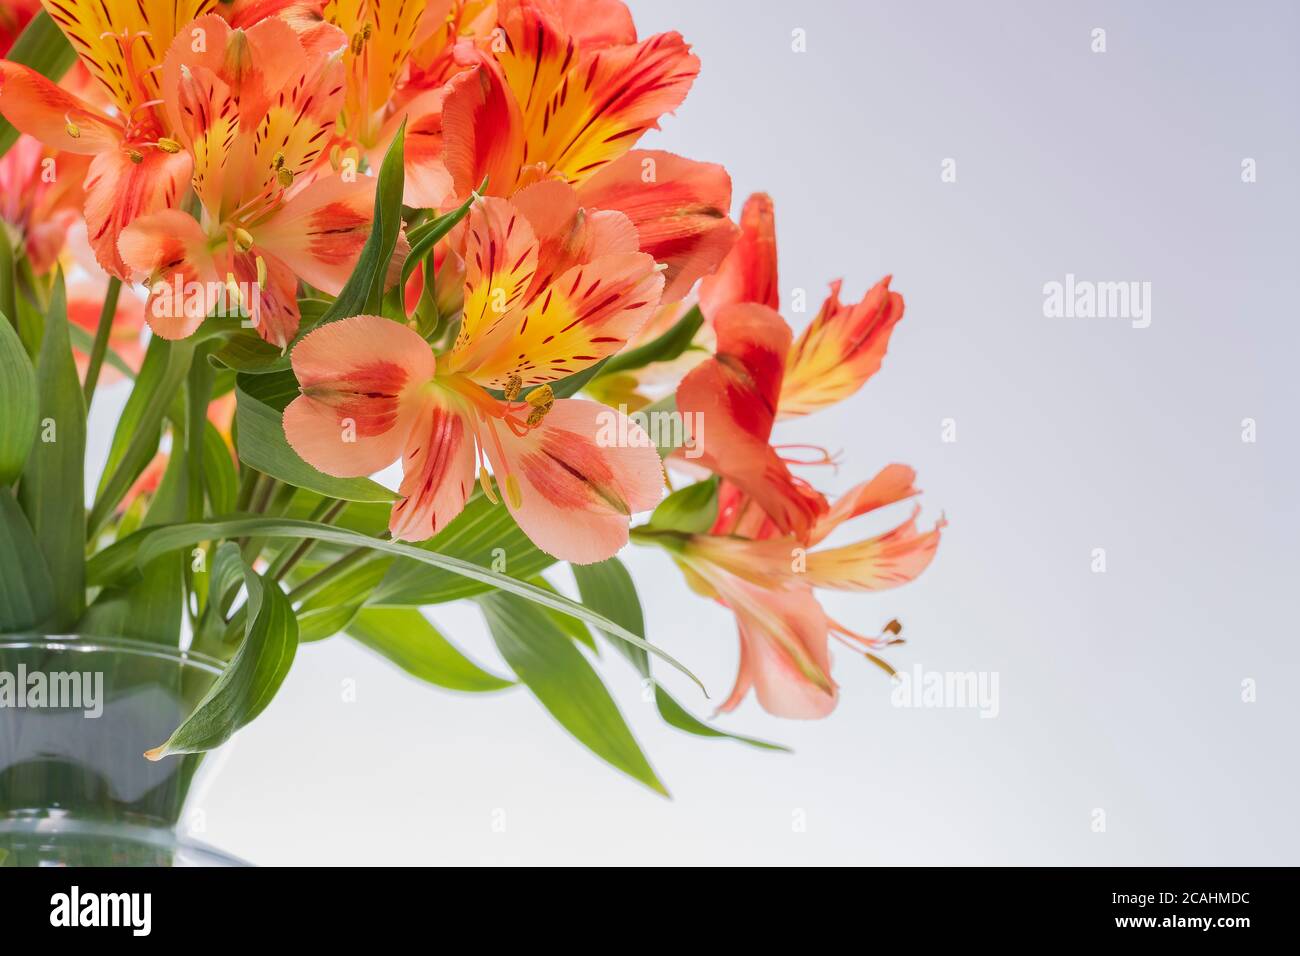 ASTROMELIA FLOWER ON WHITE BACKGROUND Stock Photo